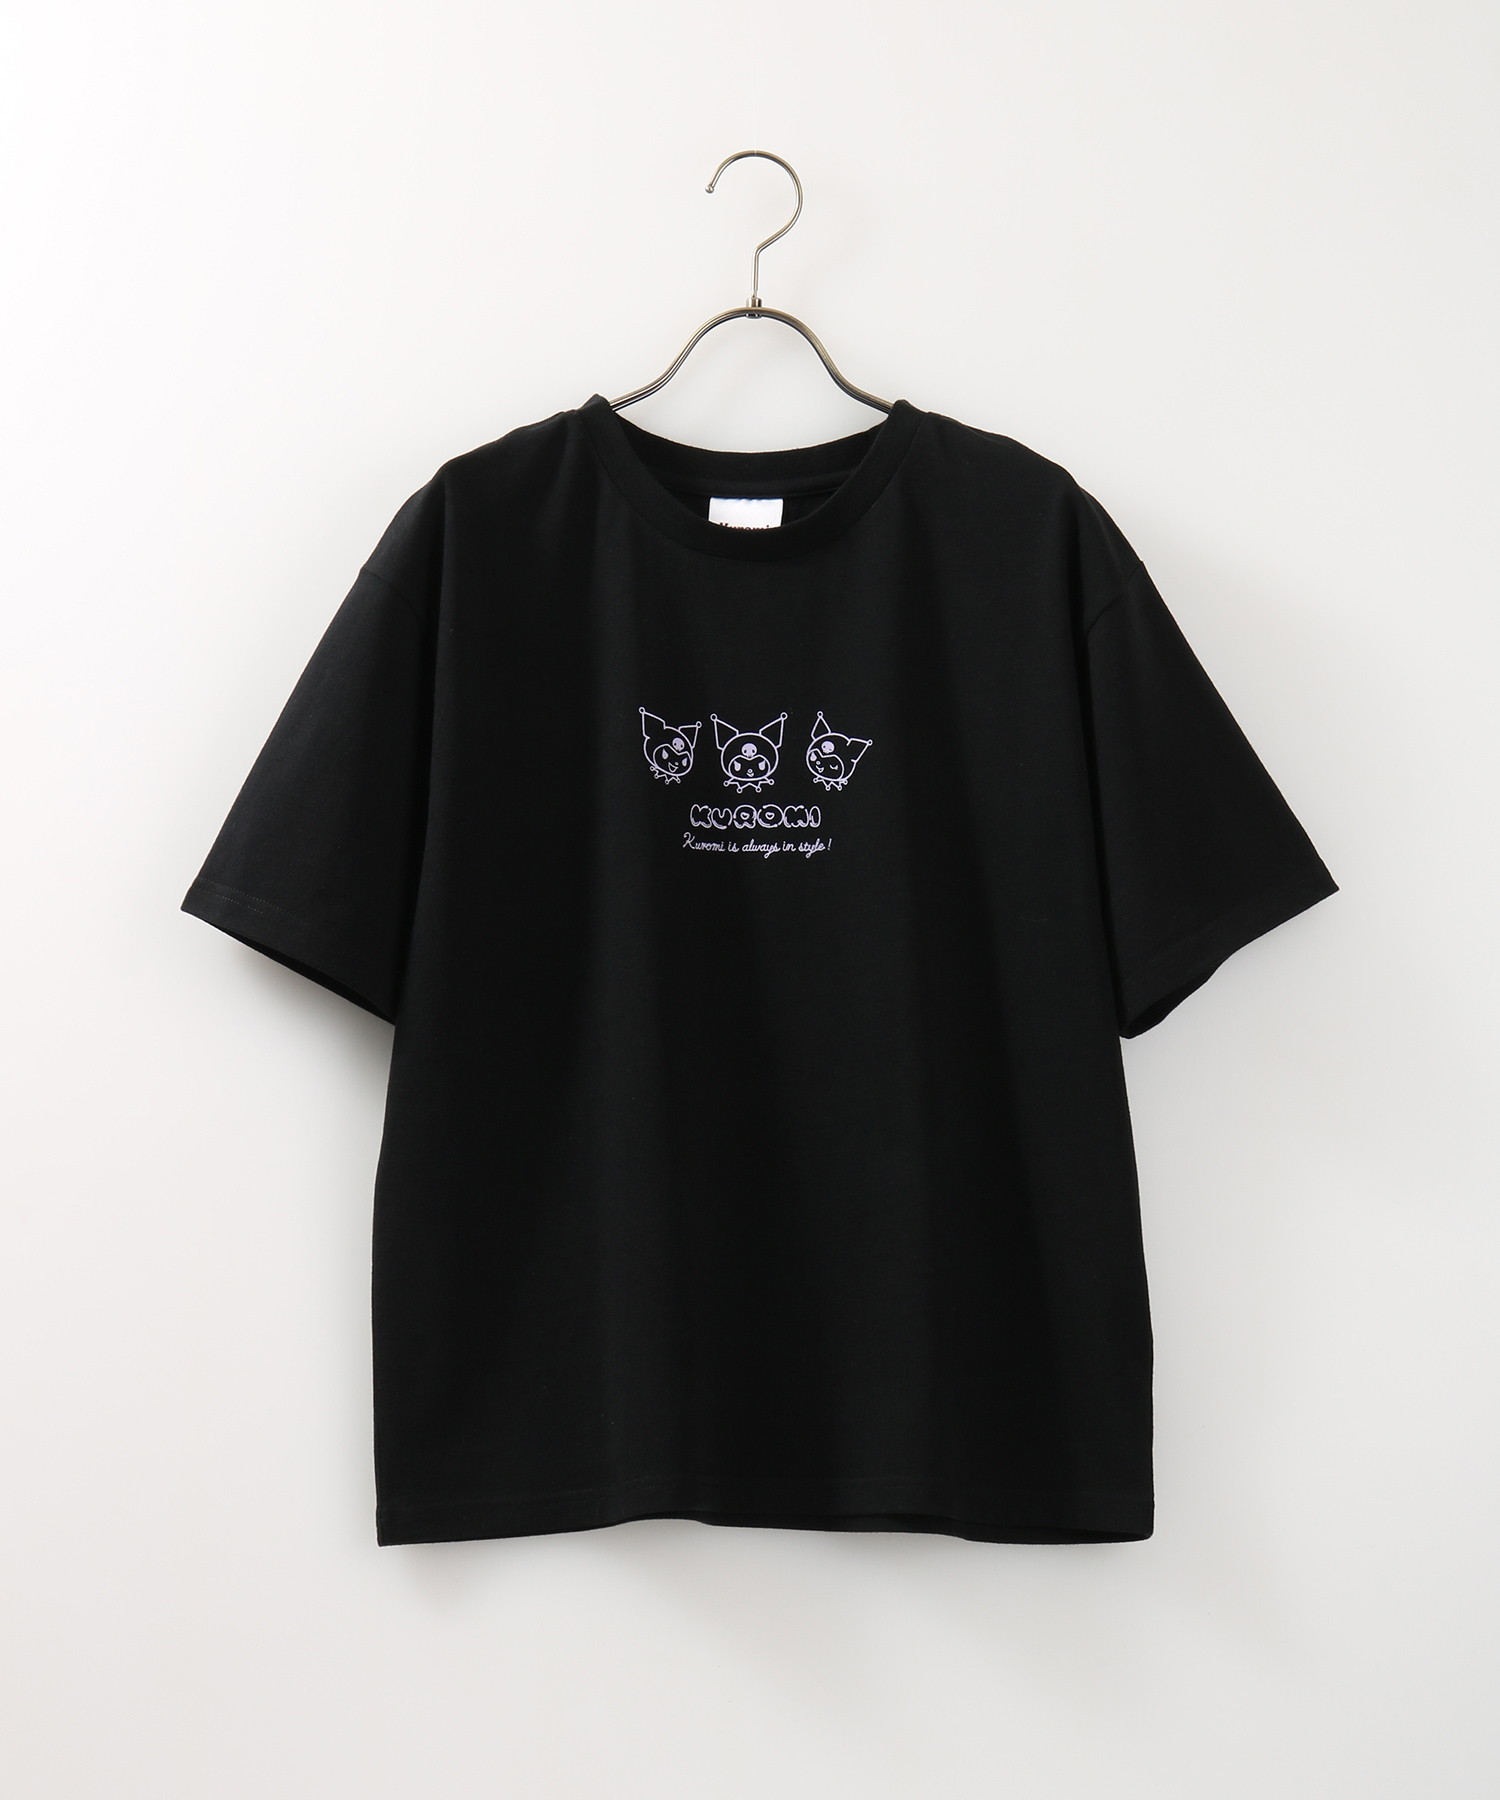 【カラー】 キャラクター Tシャツ 黒色 ブラック ：スニケス ブランド - agaveofsedona.com